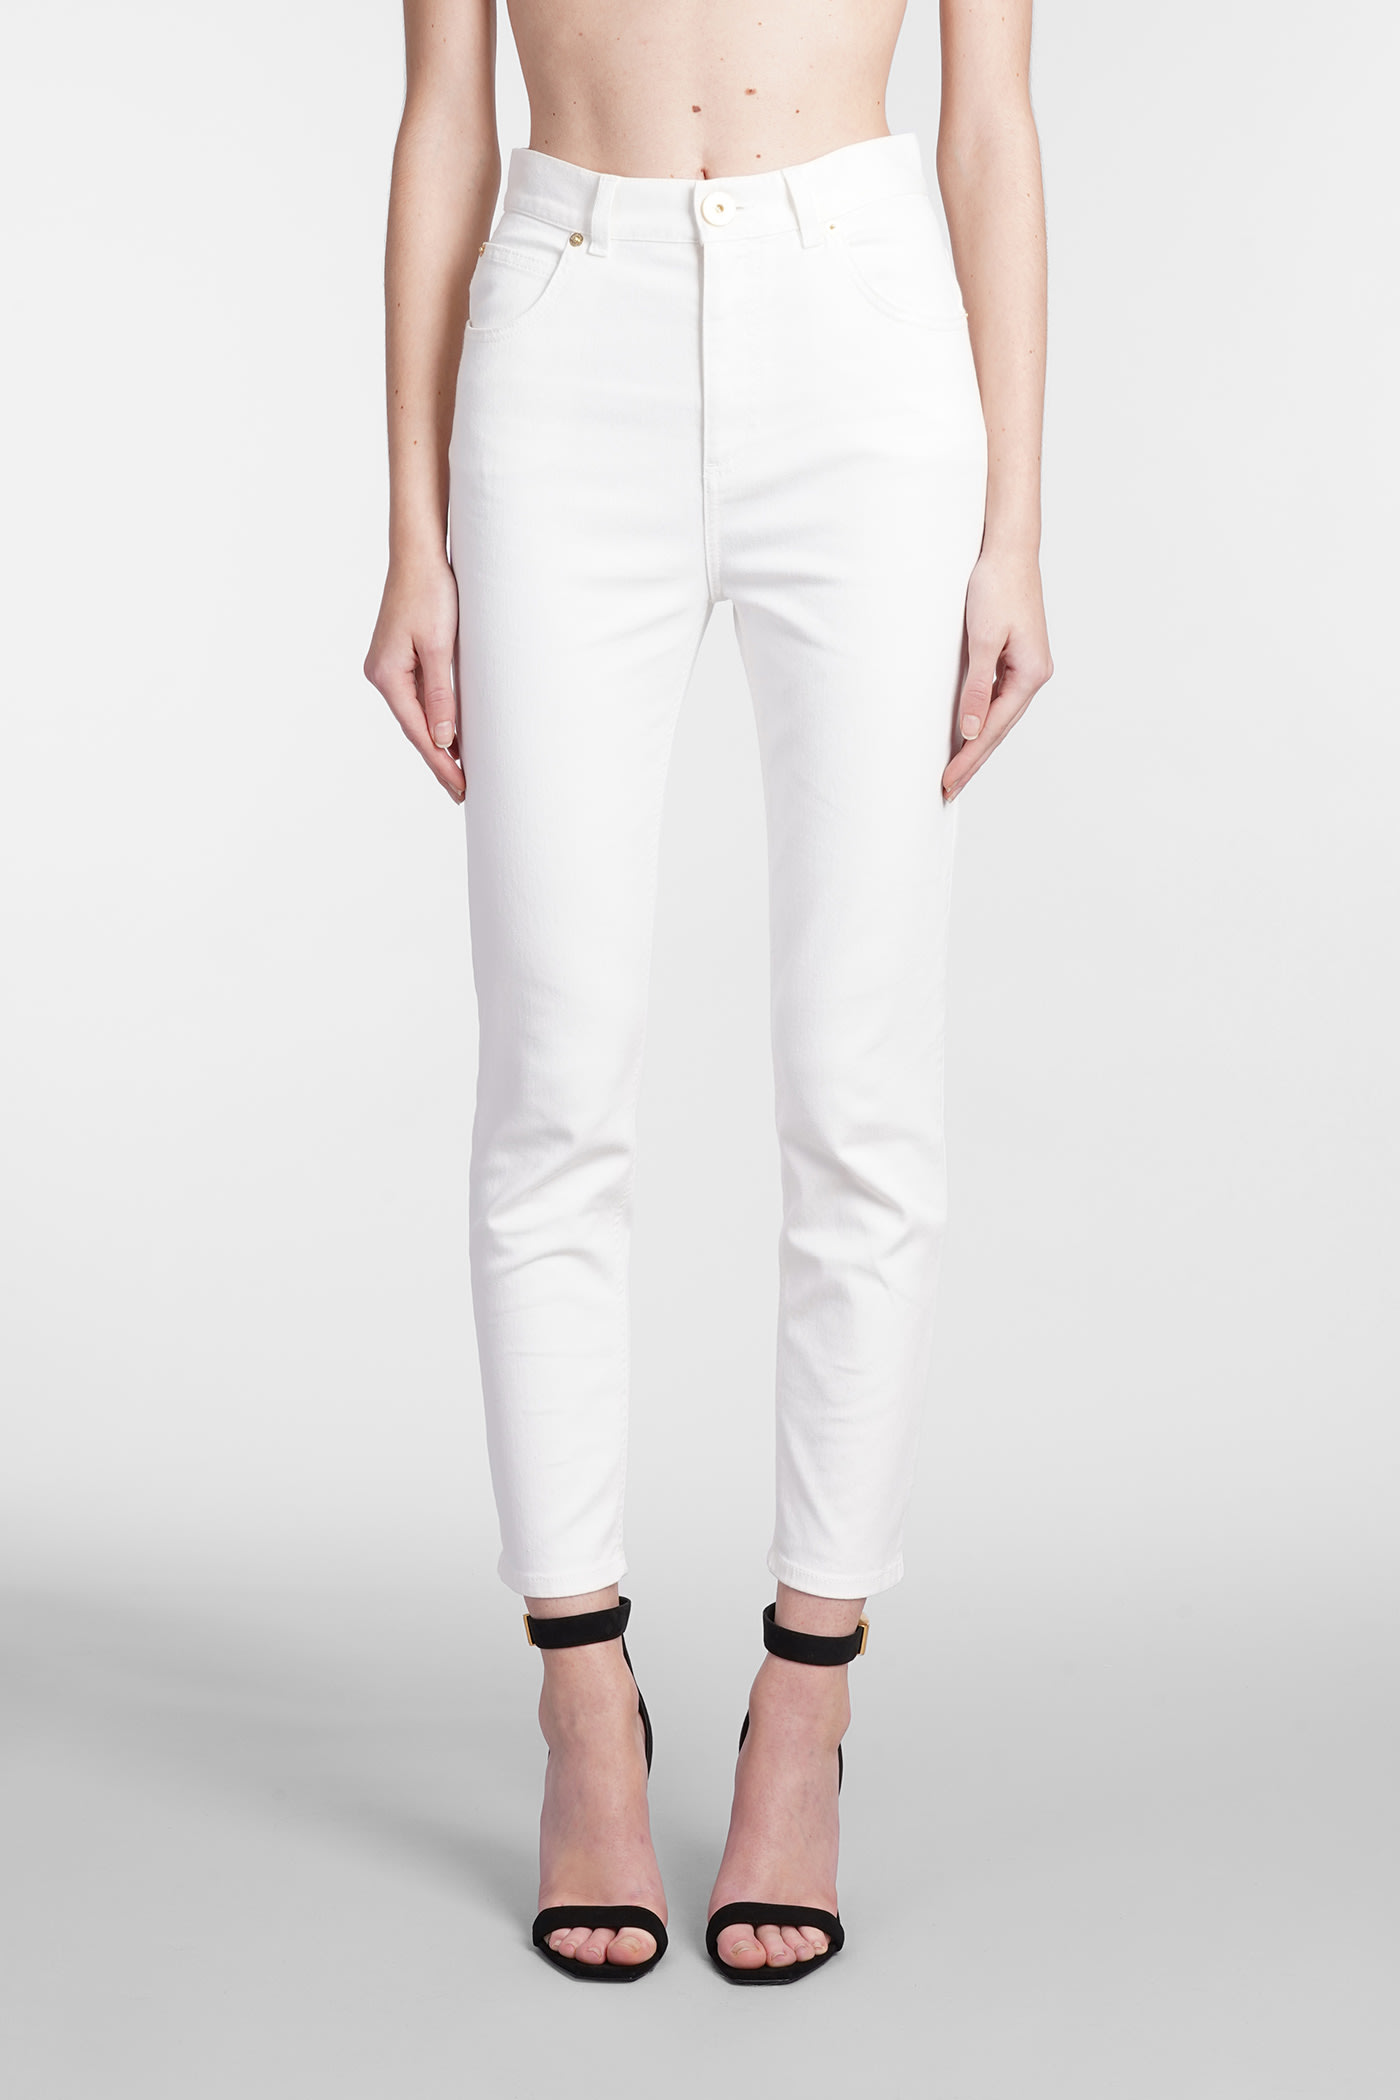 Balmain Jeans In White Denim